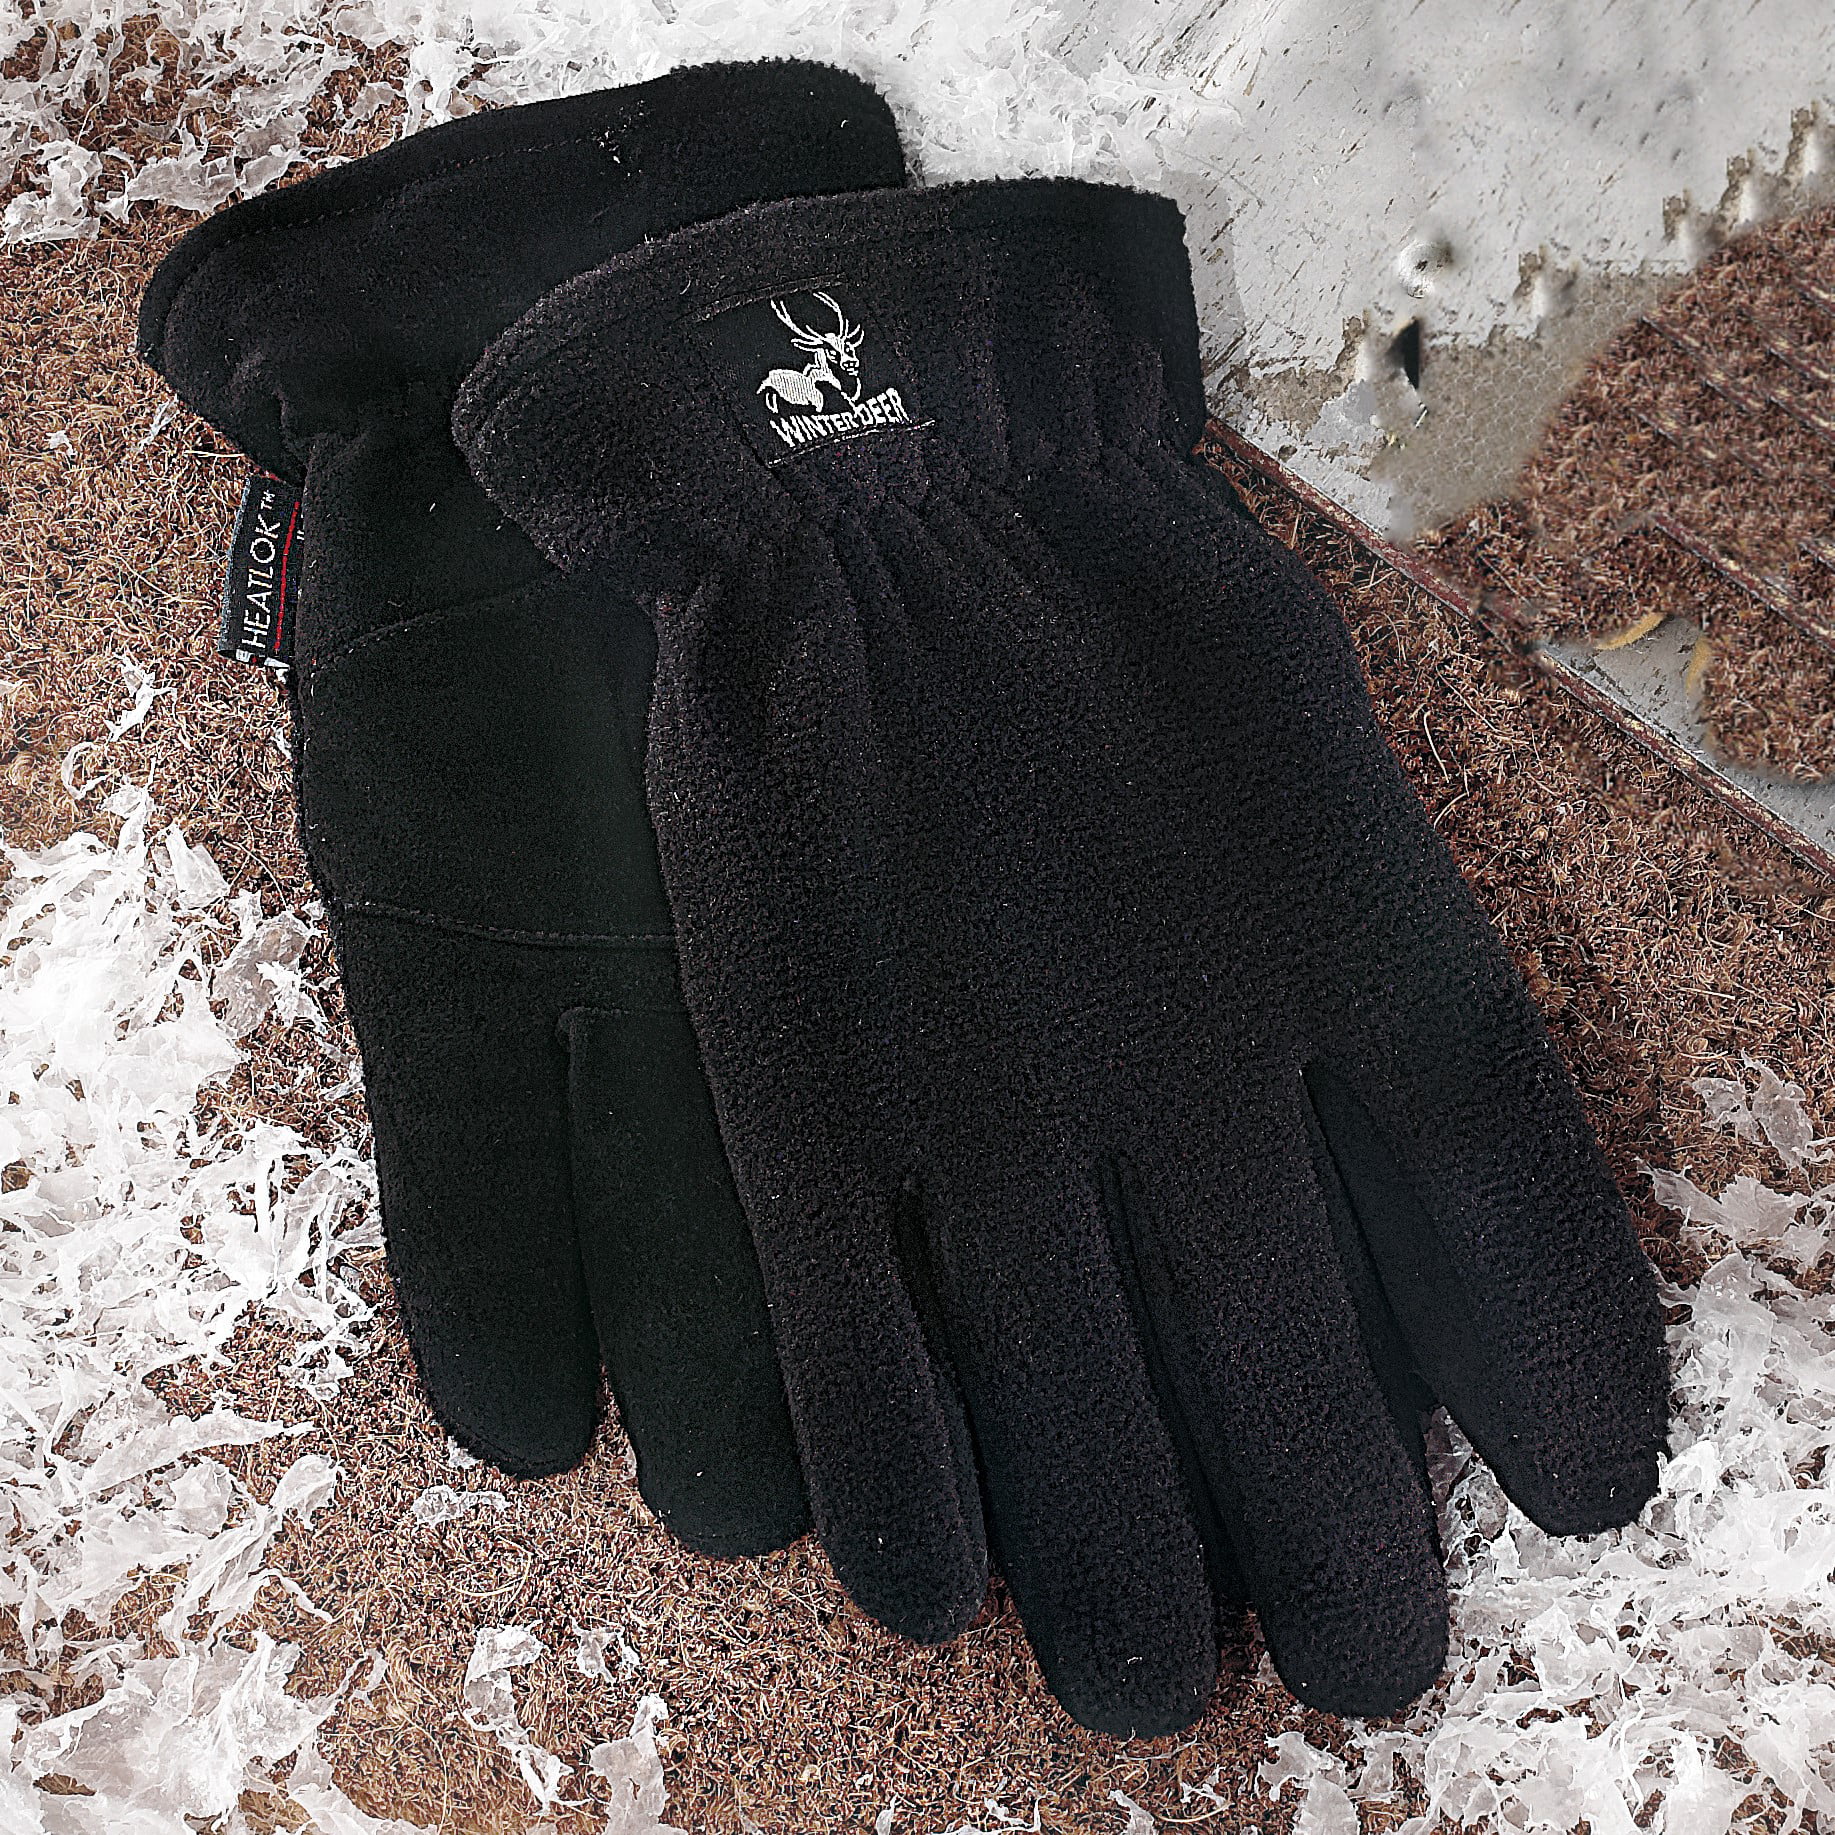 WARM Winter Heat-Lock Heatlok Insulated Gloves-Black-Tan-WOMEN Large-Size 8 